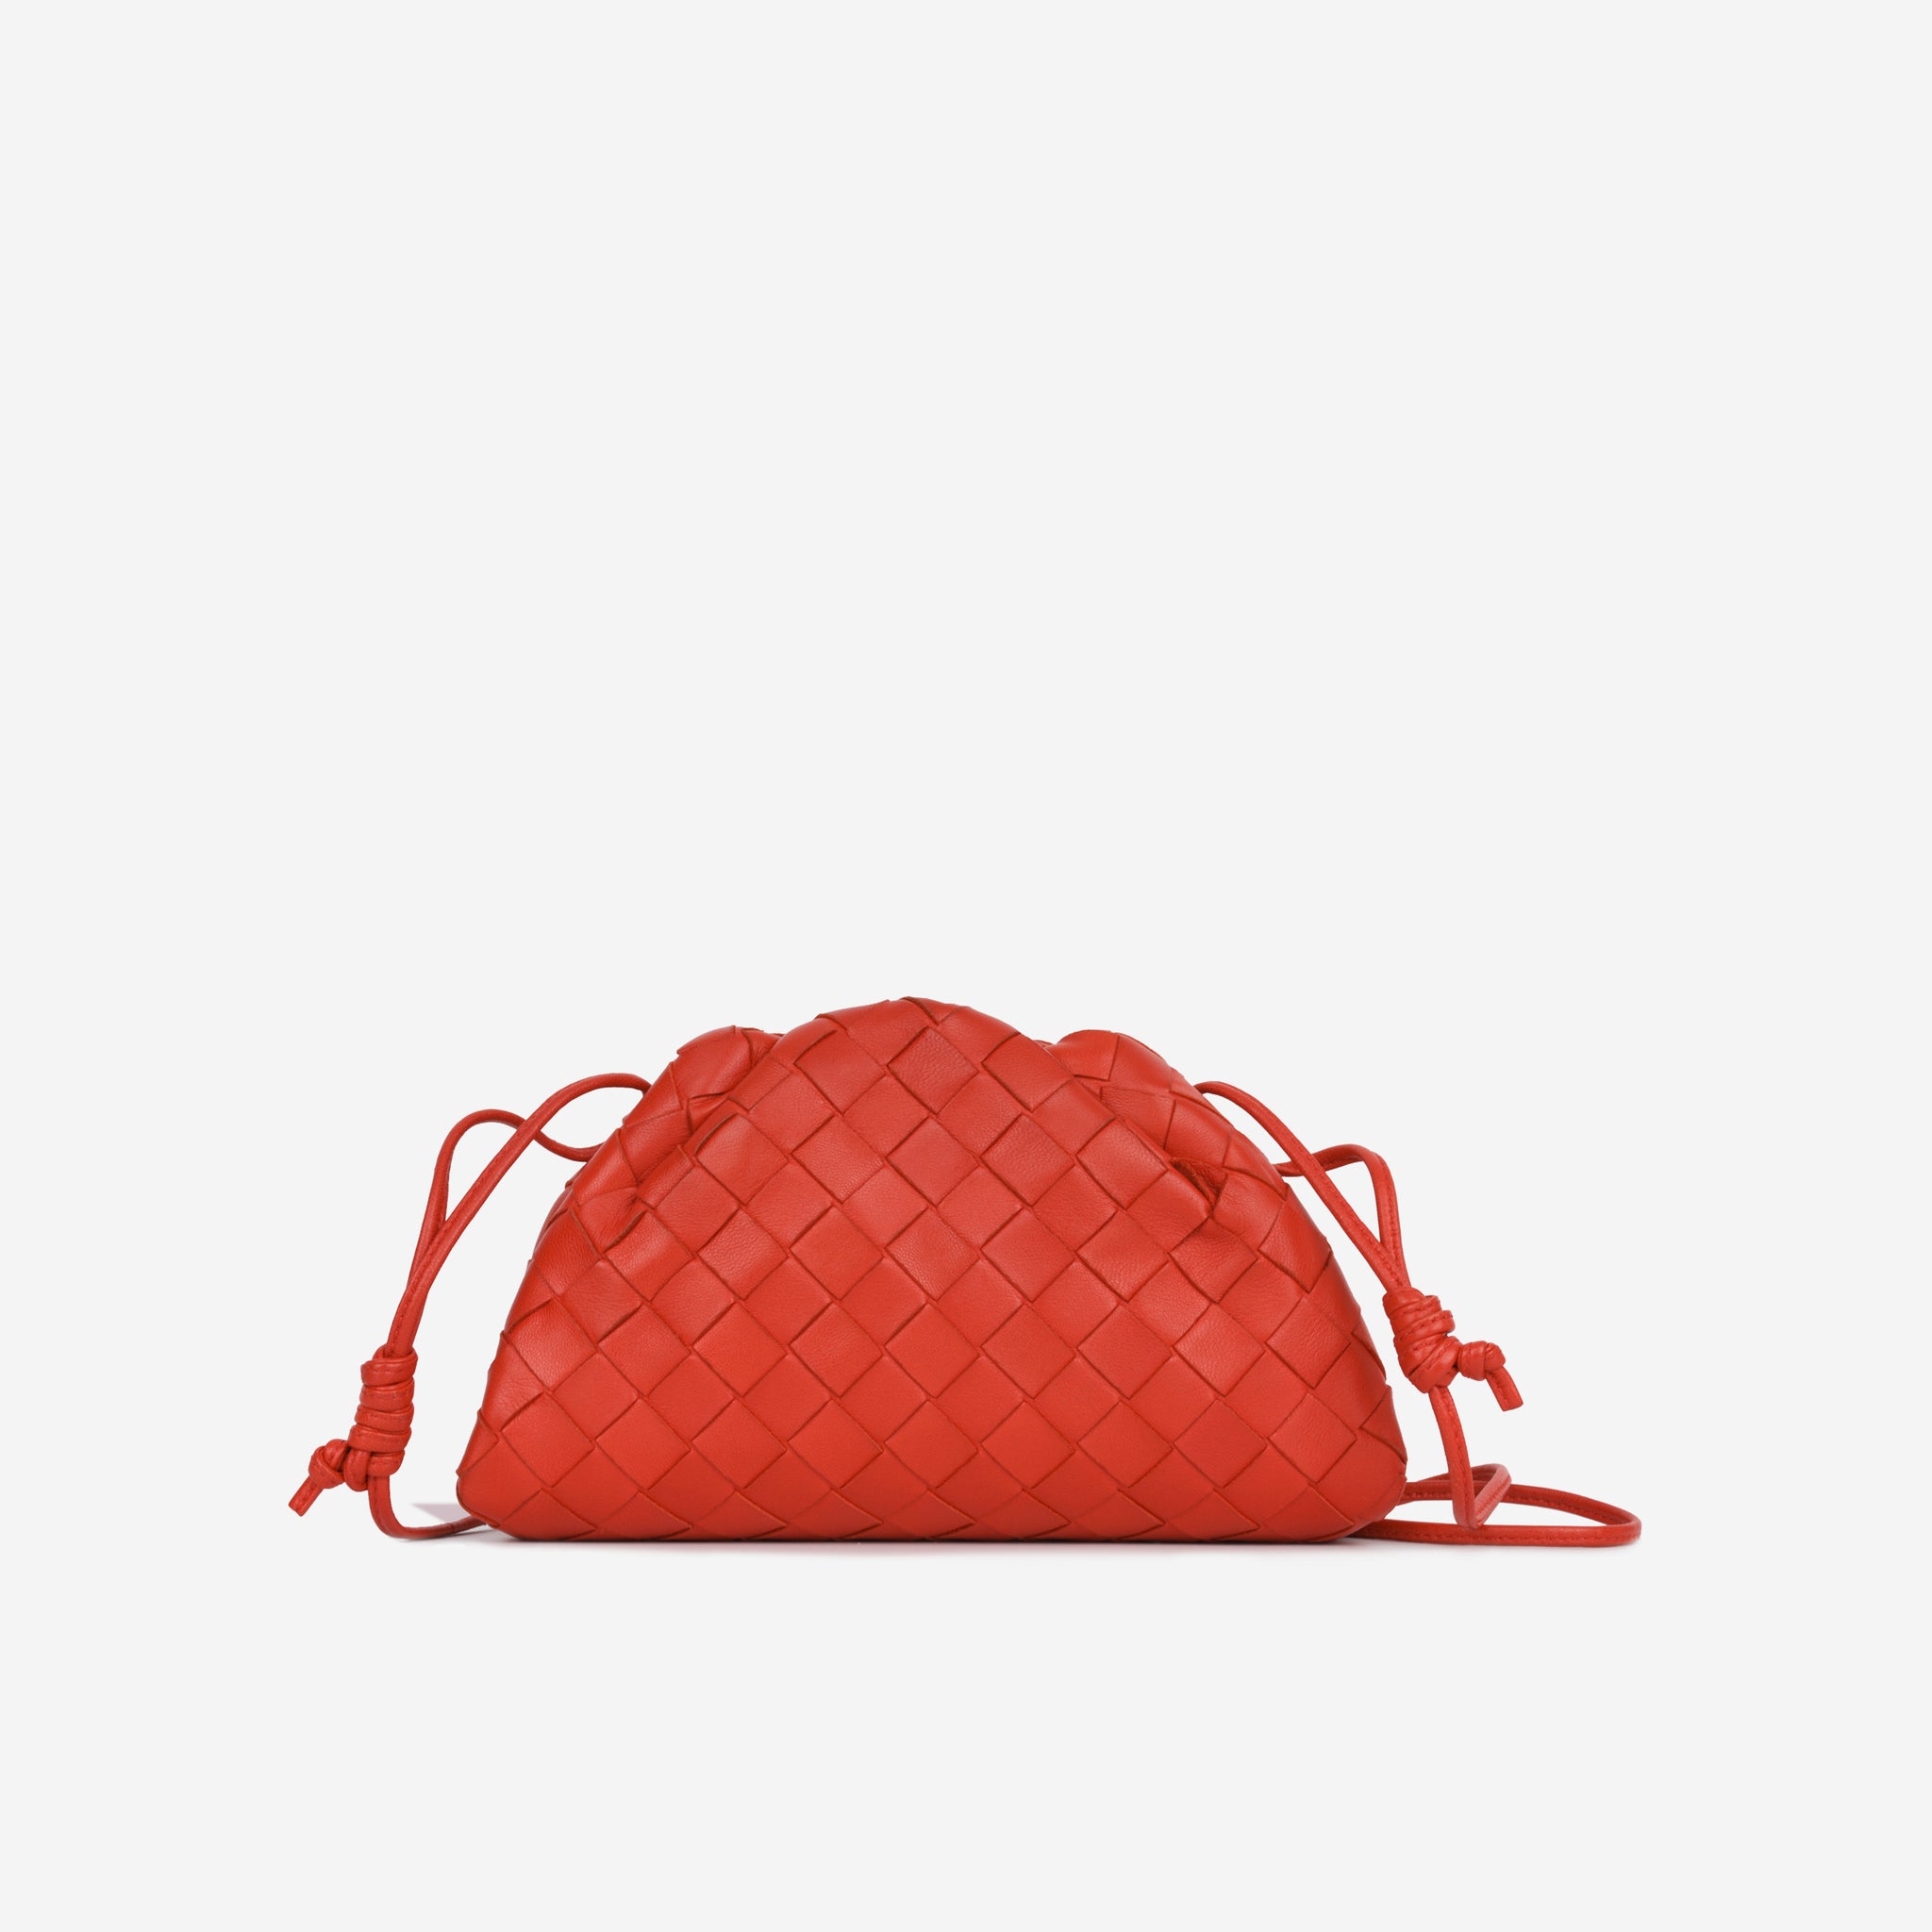 Bottega Veneta - Mini Pouch - Red Intrecciato Leather - SHW